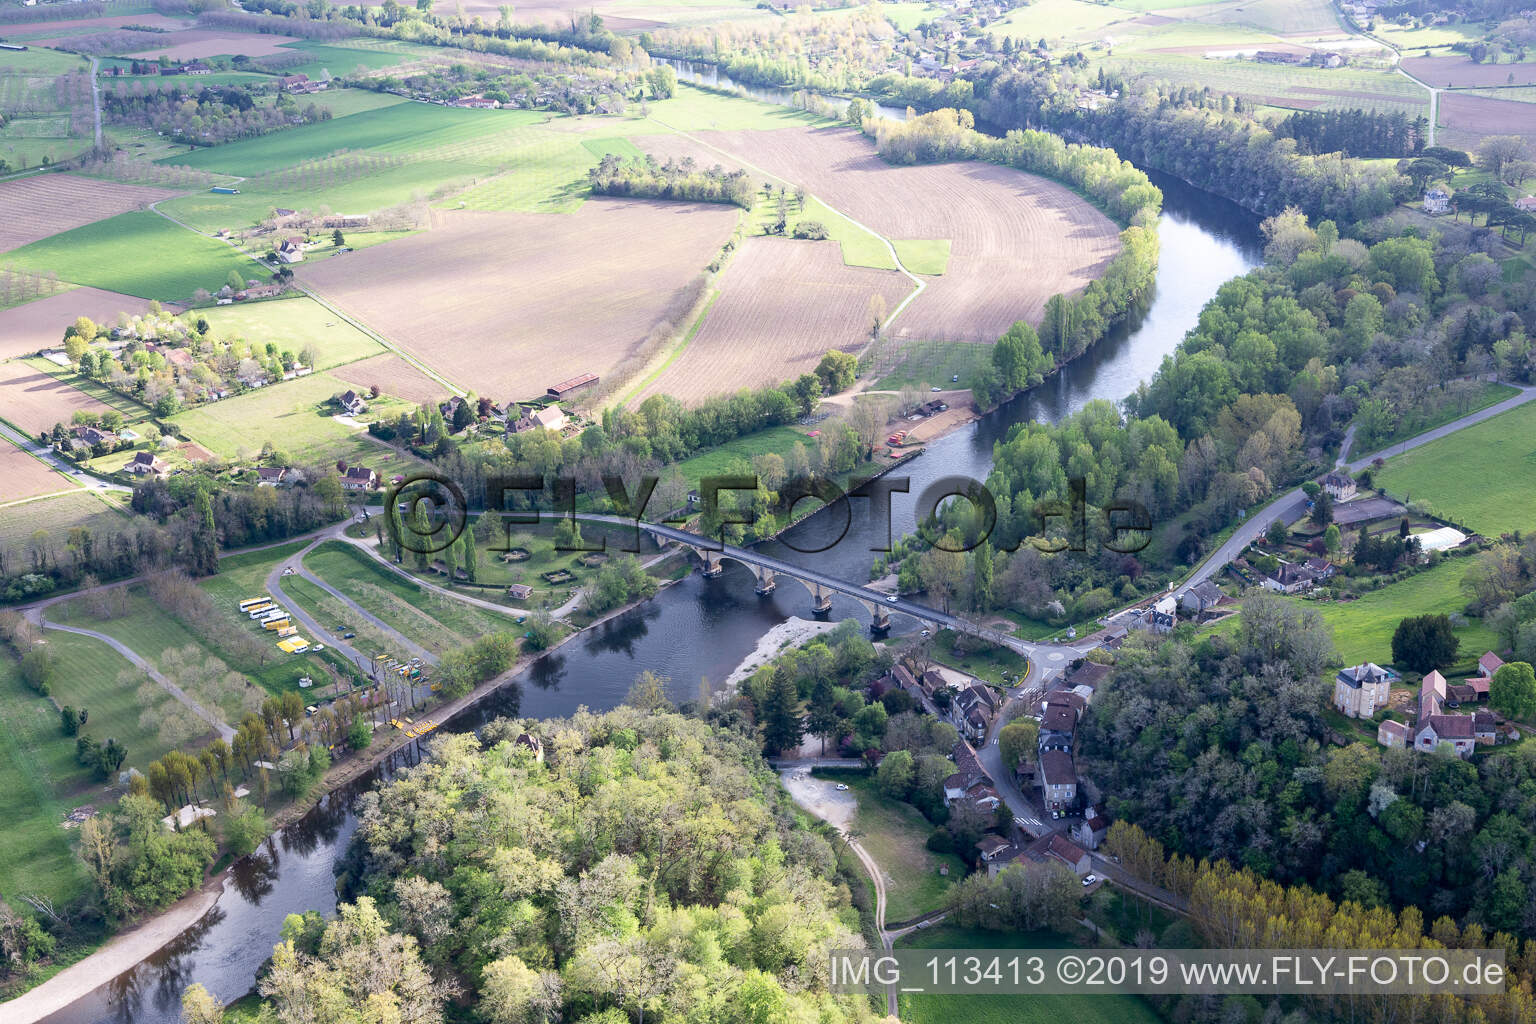 Dordogne bridge in Vitrac in the state Dordogne, France